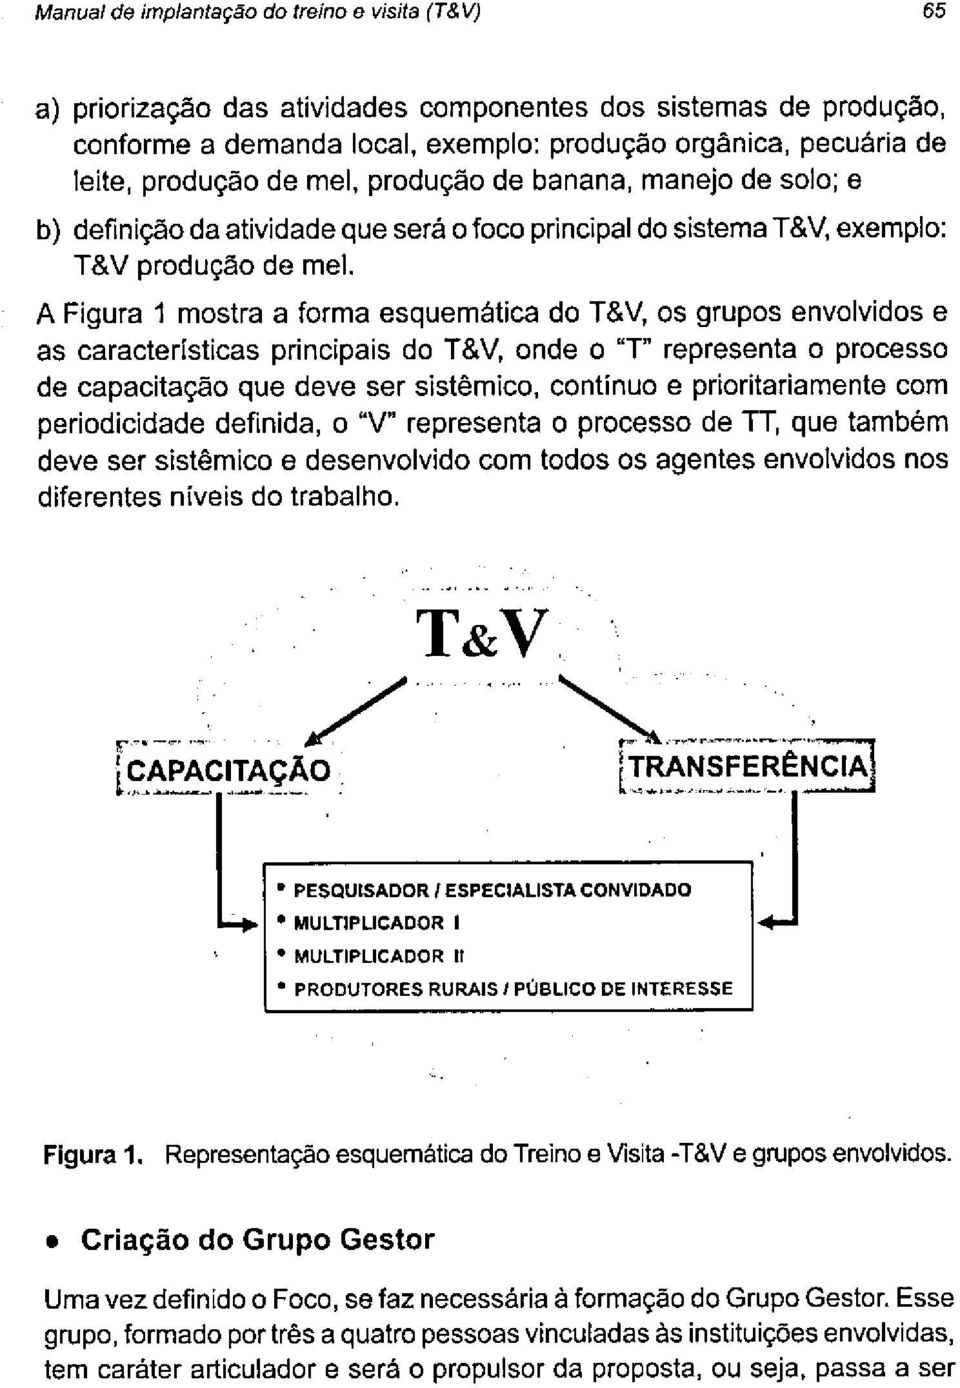 A Figura 1 mostra a forma esquemática do T&V, os grupos envolvidos e as características principais do T&V, onde o "T" representa o processo de capacitação que deve ser sistêmico, continuo e